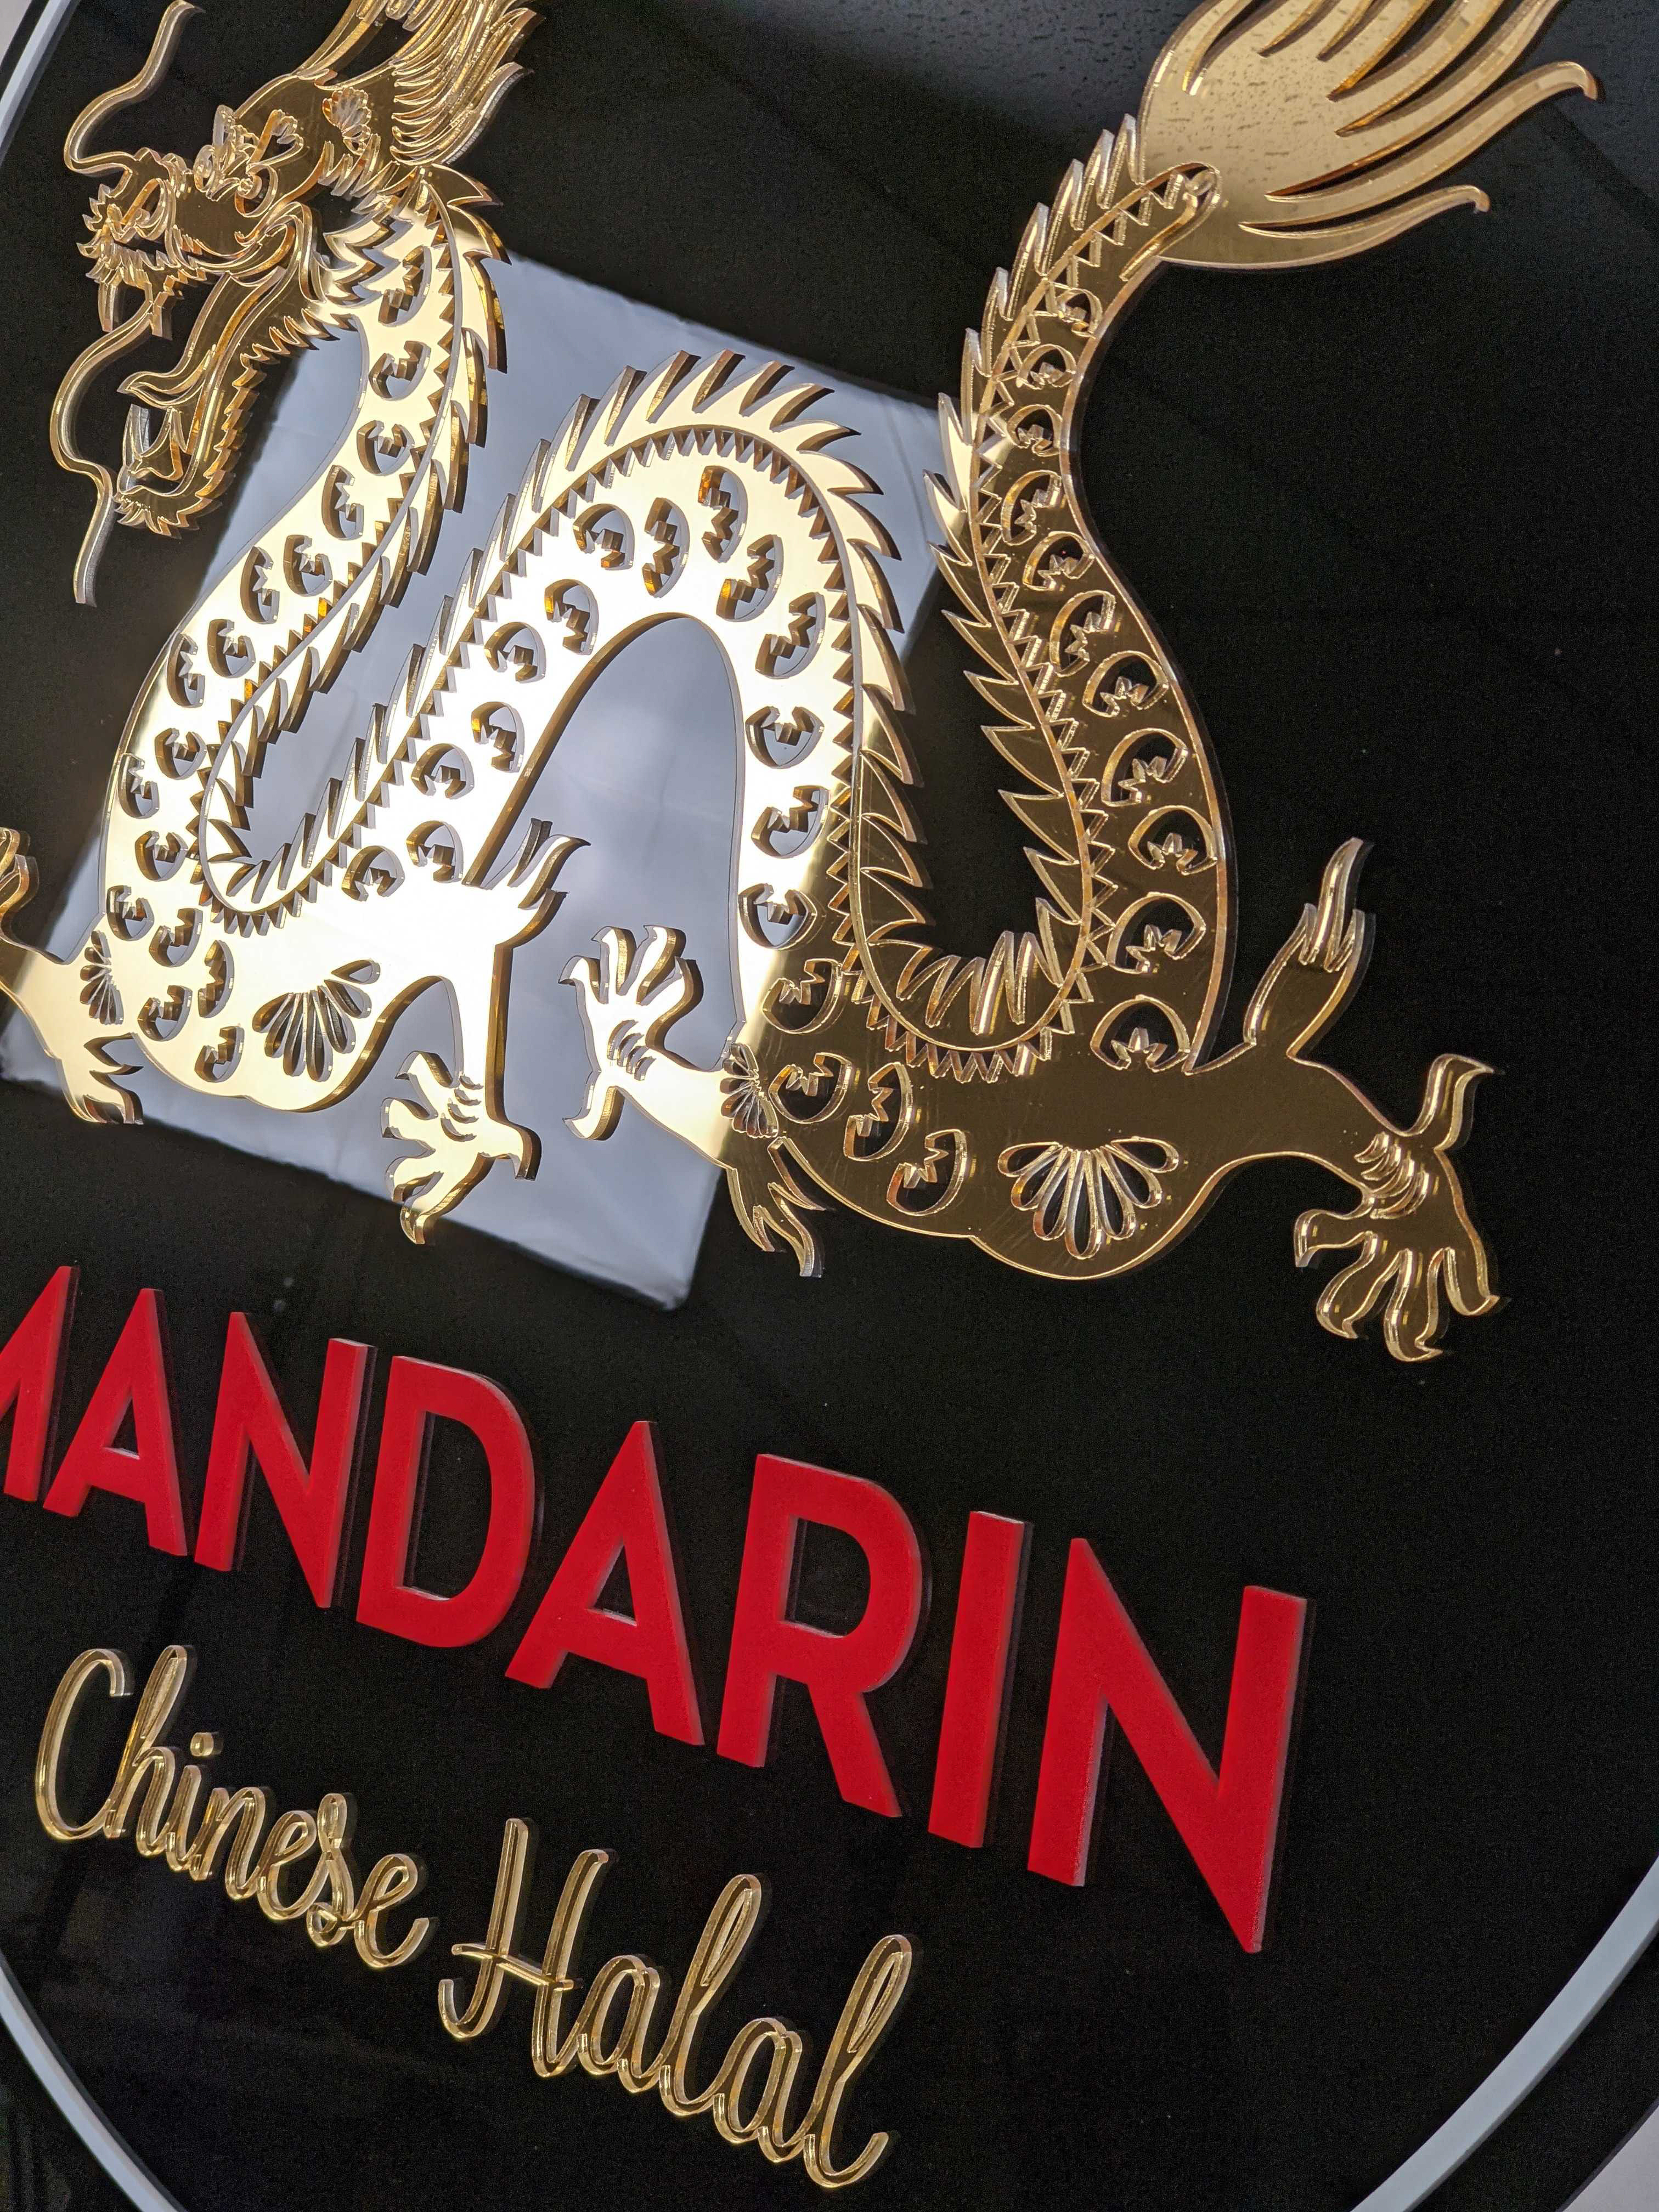 Mandarin Chinese Halal detail shot